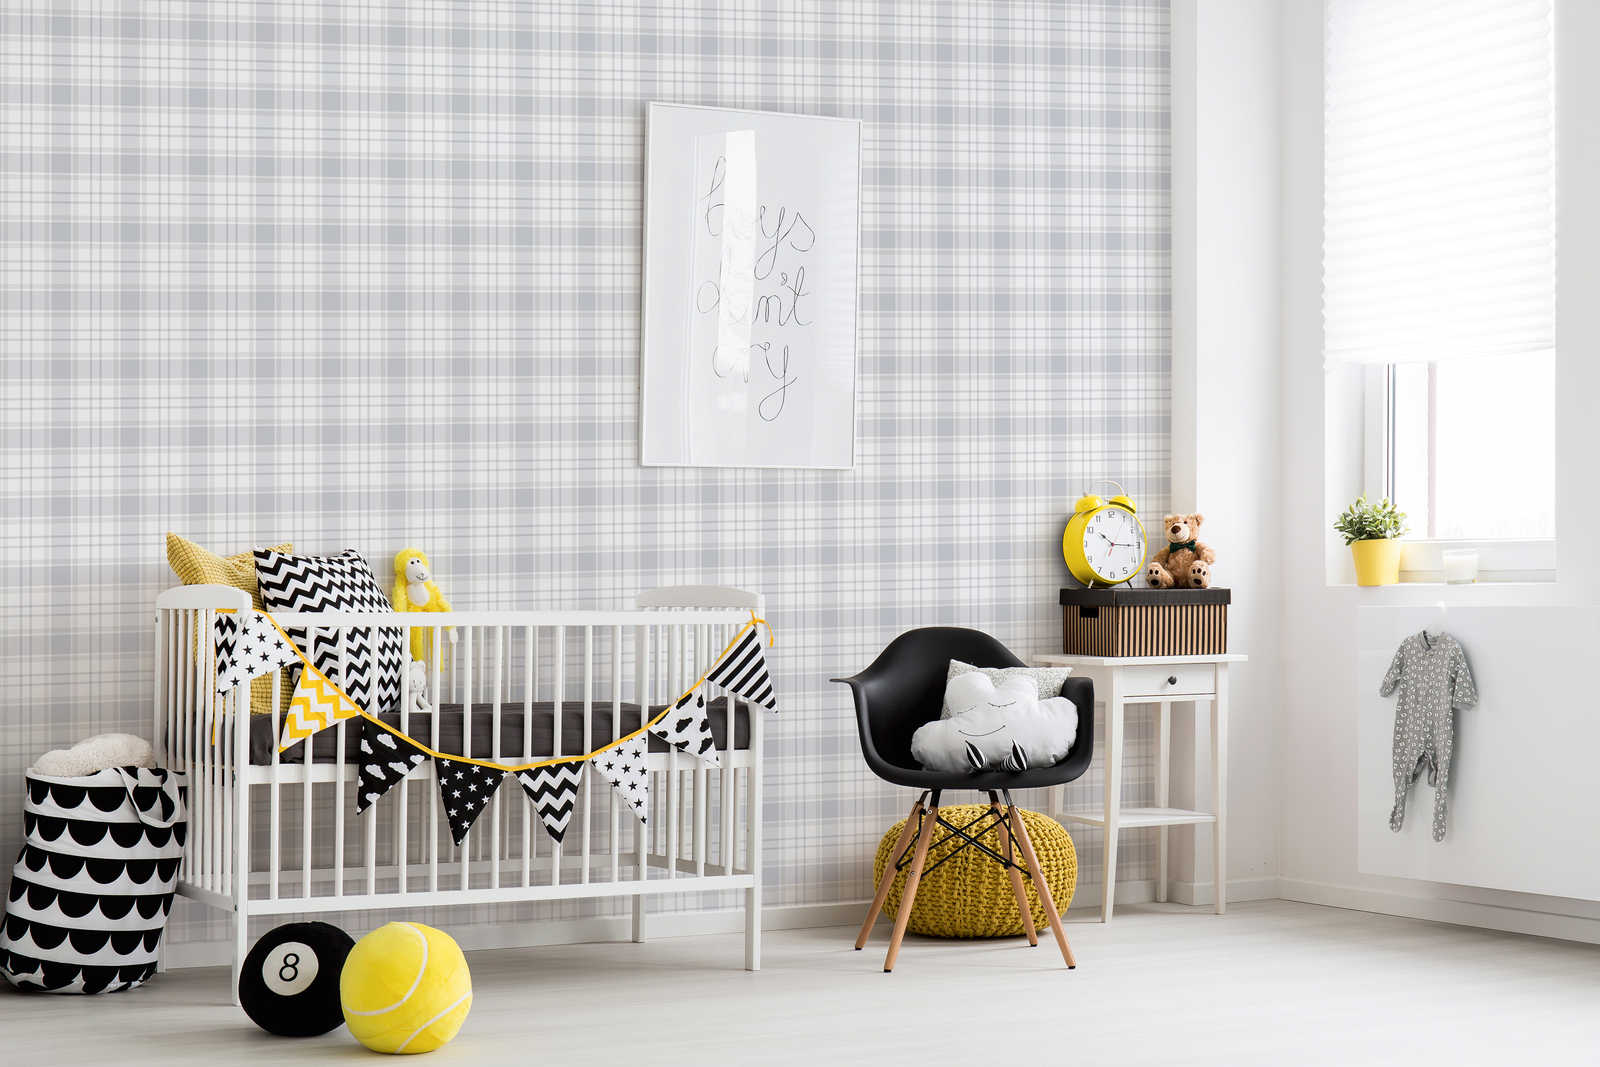             Papel pintado habitación infantil motivo tartán - beige, gris, blanco
        